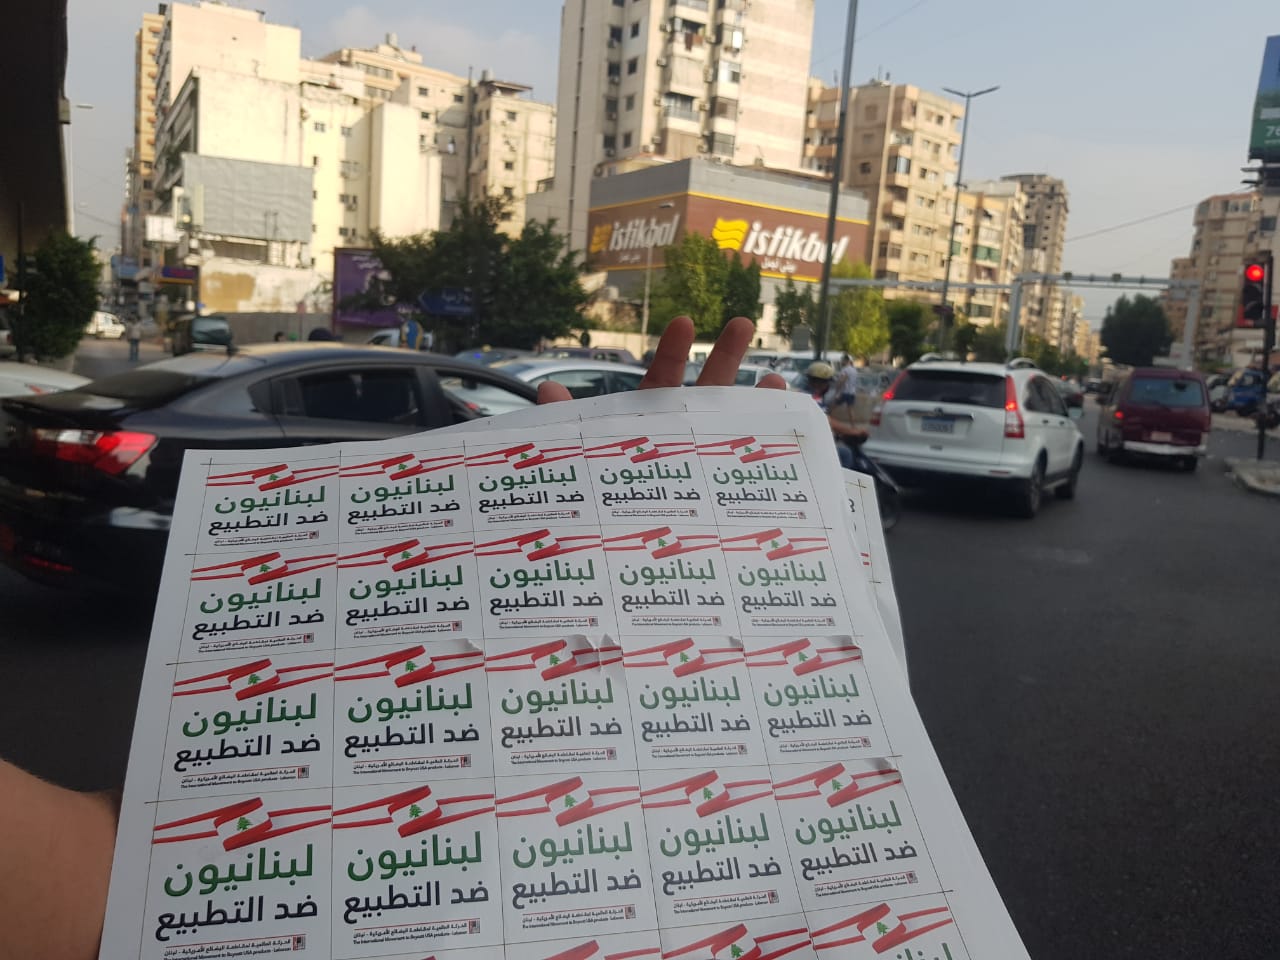 هيئة نصرة الأقصى تطلق سلسلة فعاليات بعنوان لبنانيون ضد التطبيع